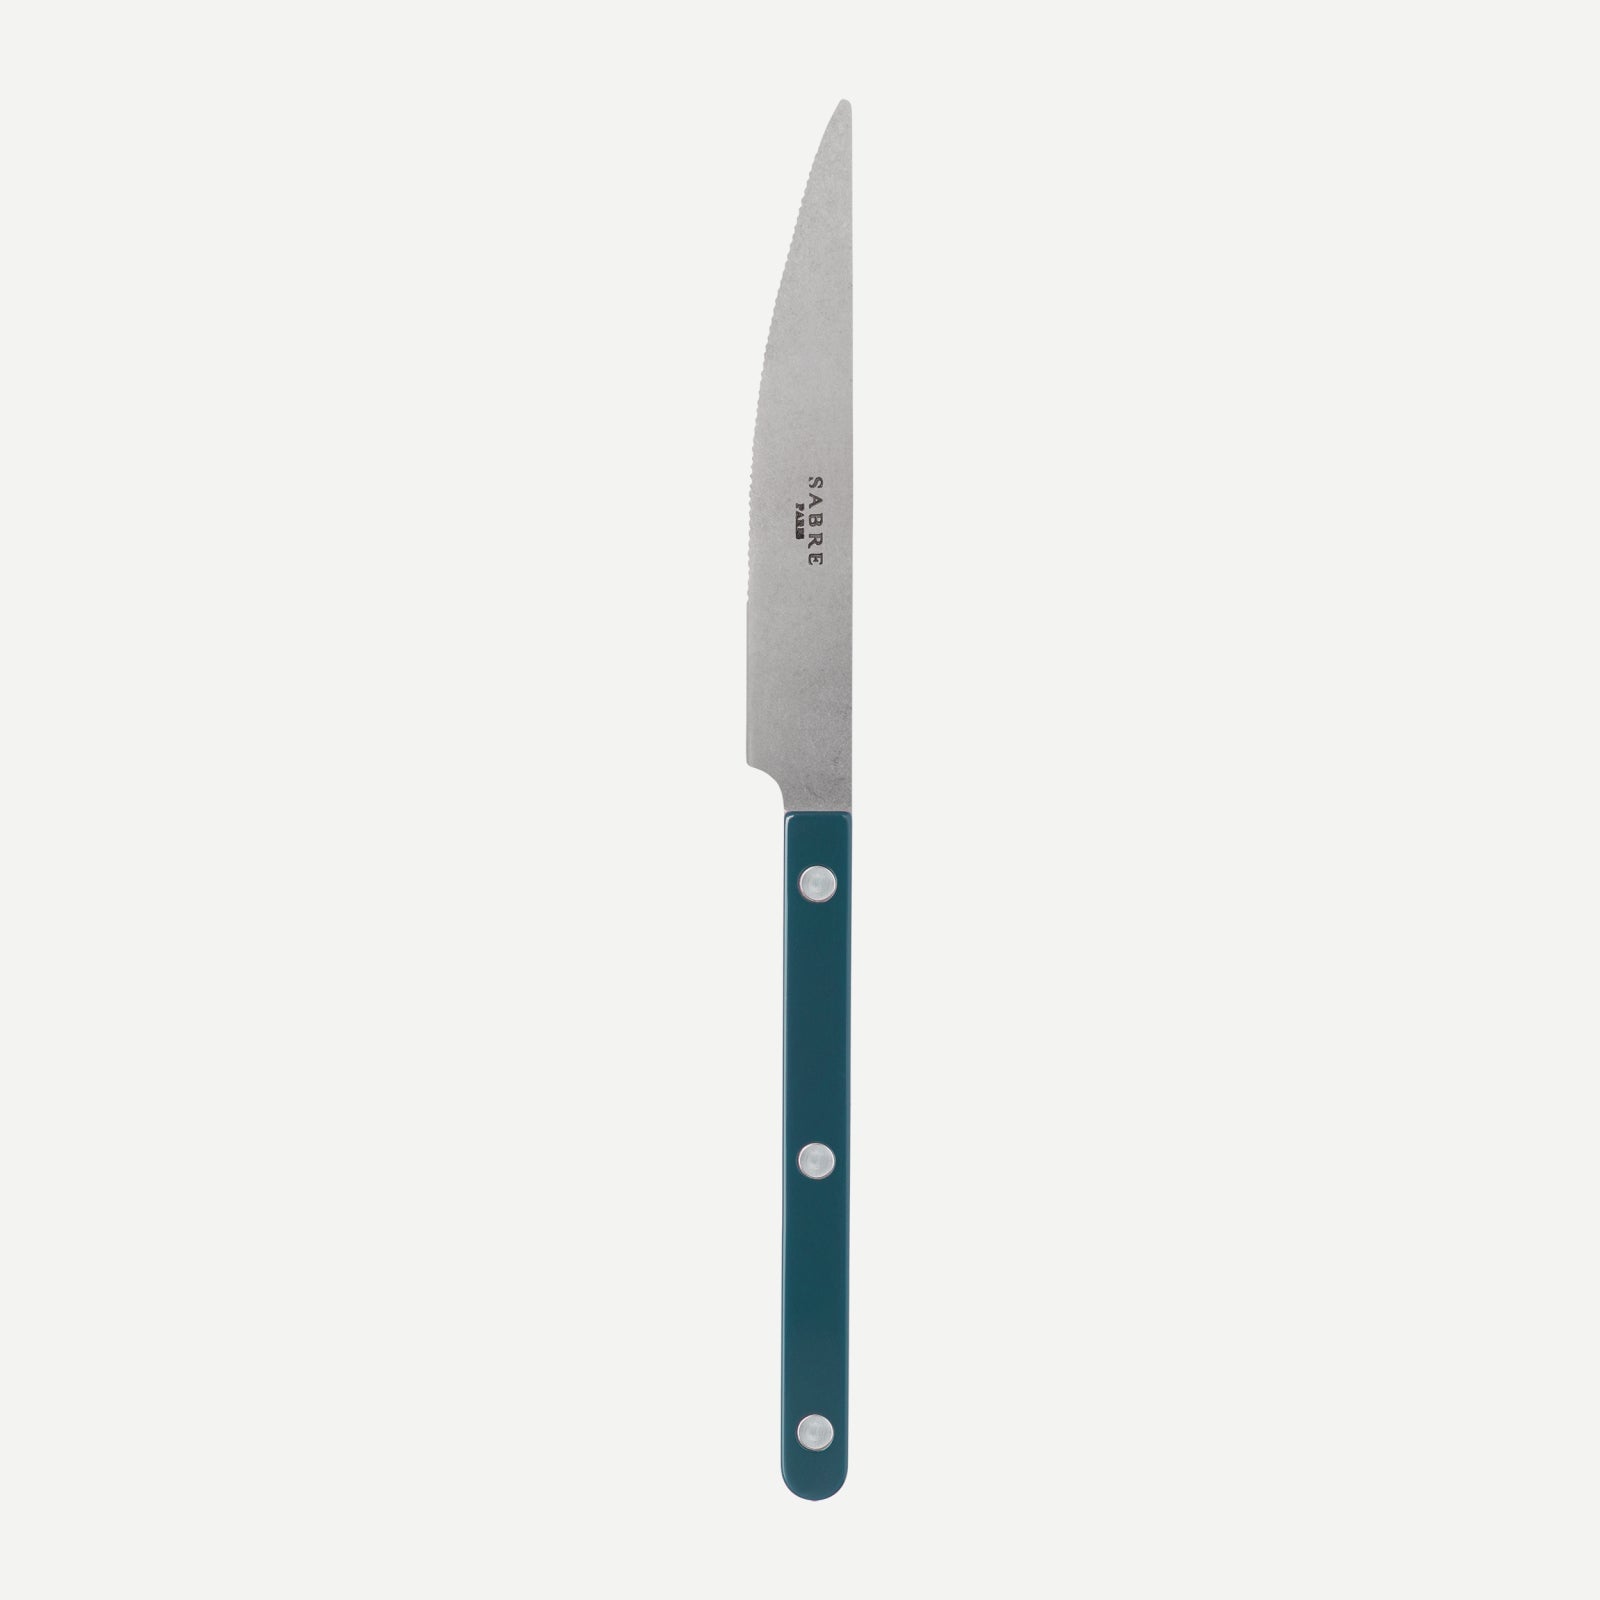 Dinner knife - Bistrot vintage solid - Aquamarine